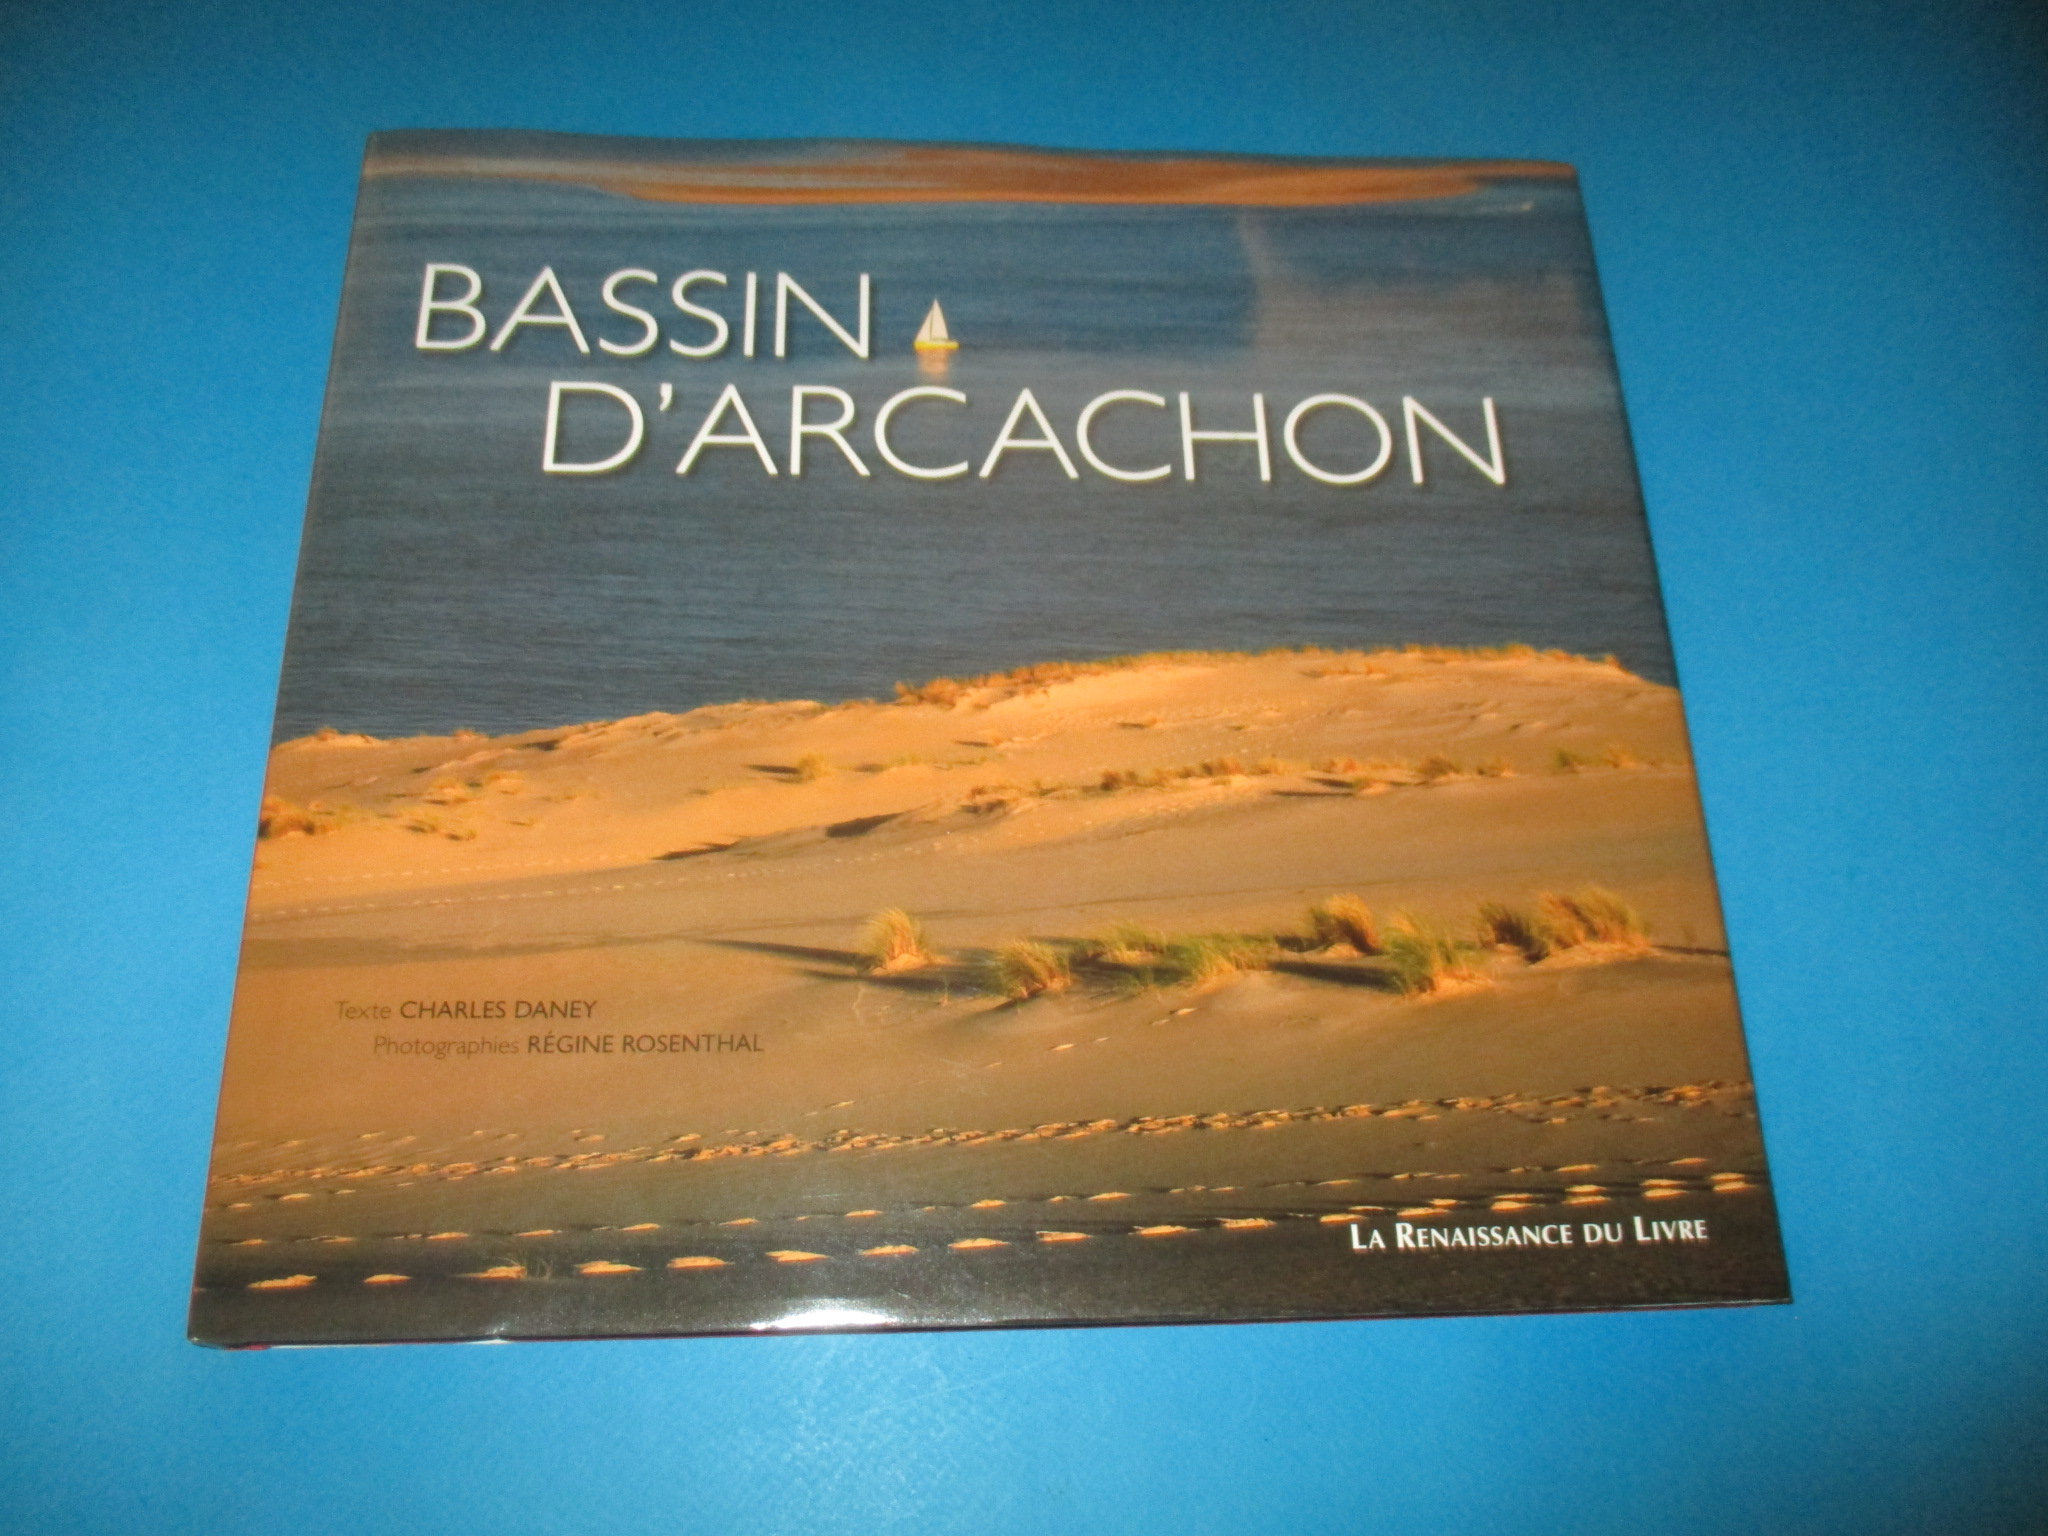 Bassin d\'Arcachon entre dunes et landes, Charles Daney & Régine Rosenthal, Renaissance du Livre 2007